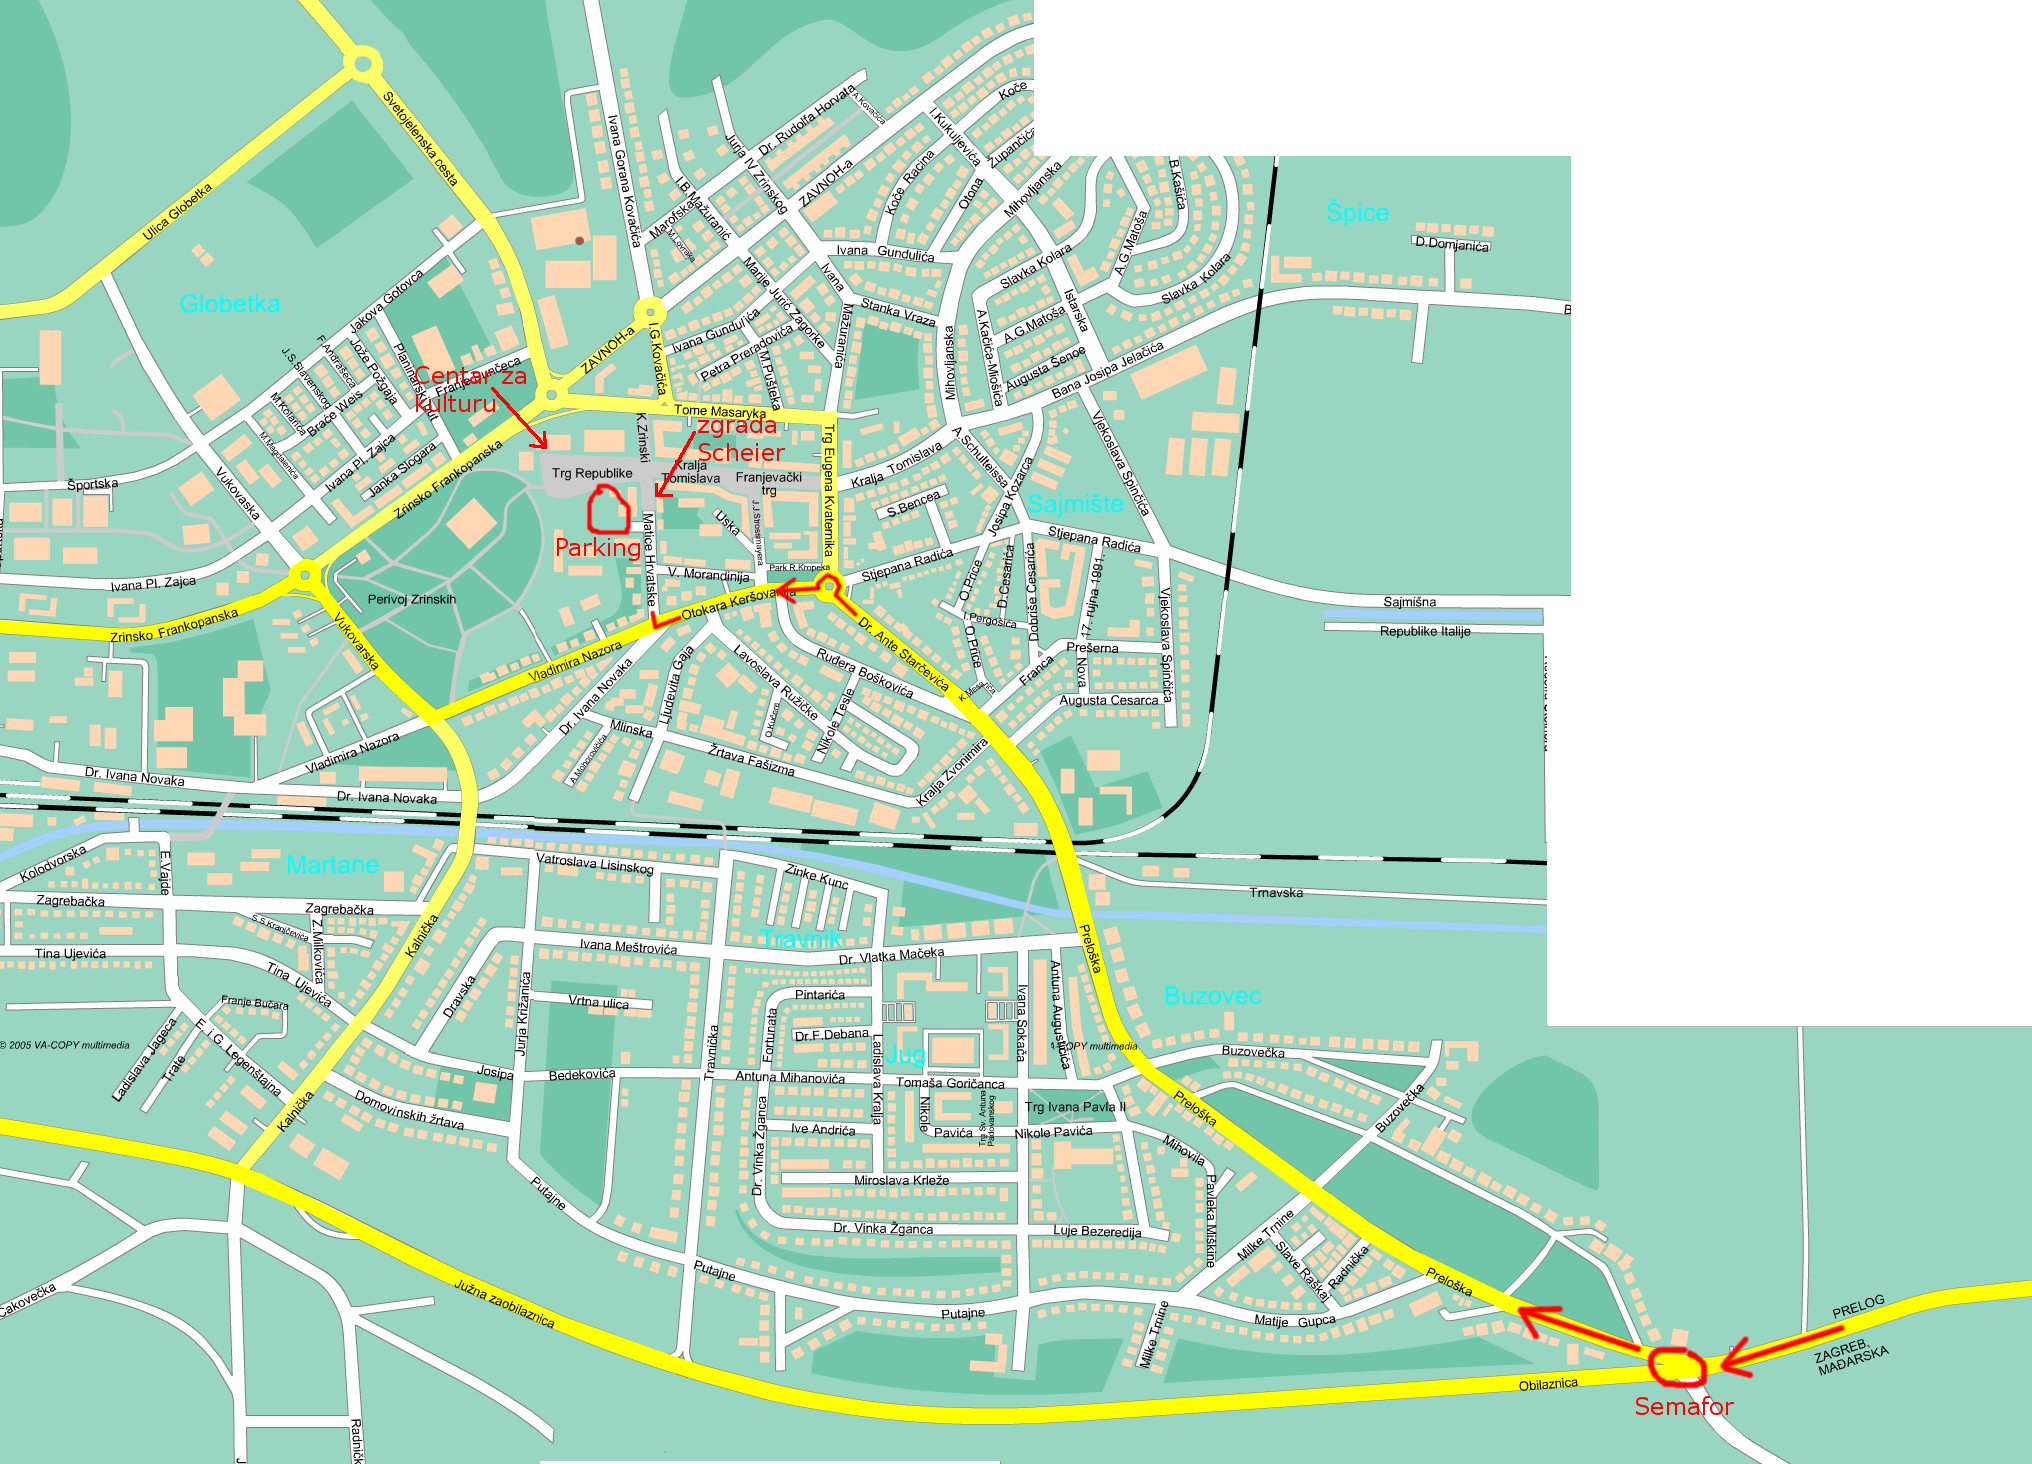 karta grada koprivnica Posjetite Smotru istraživačkih radova učenika | Eduidea karta grada koprivnica